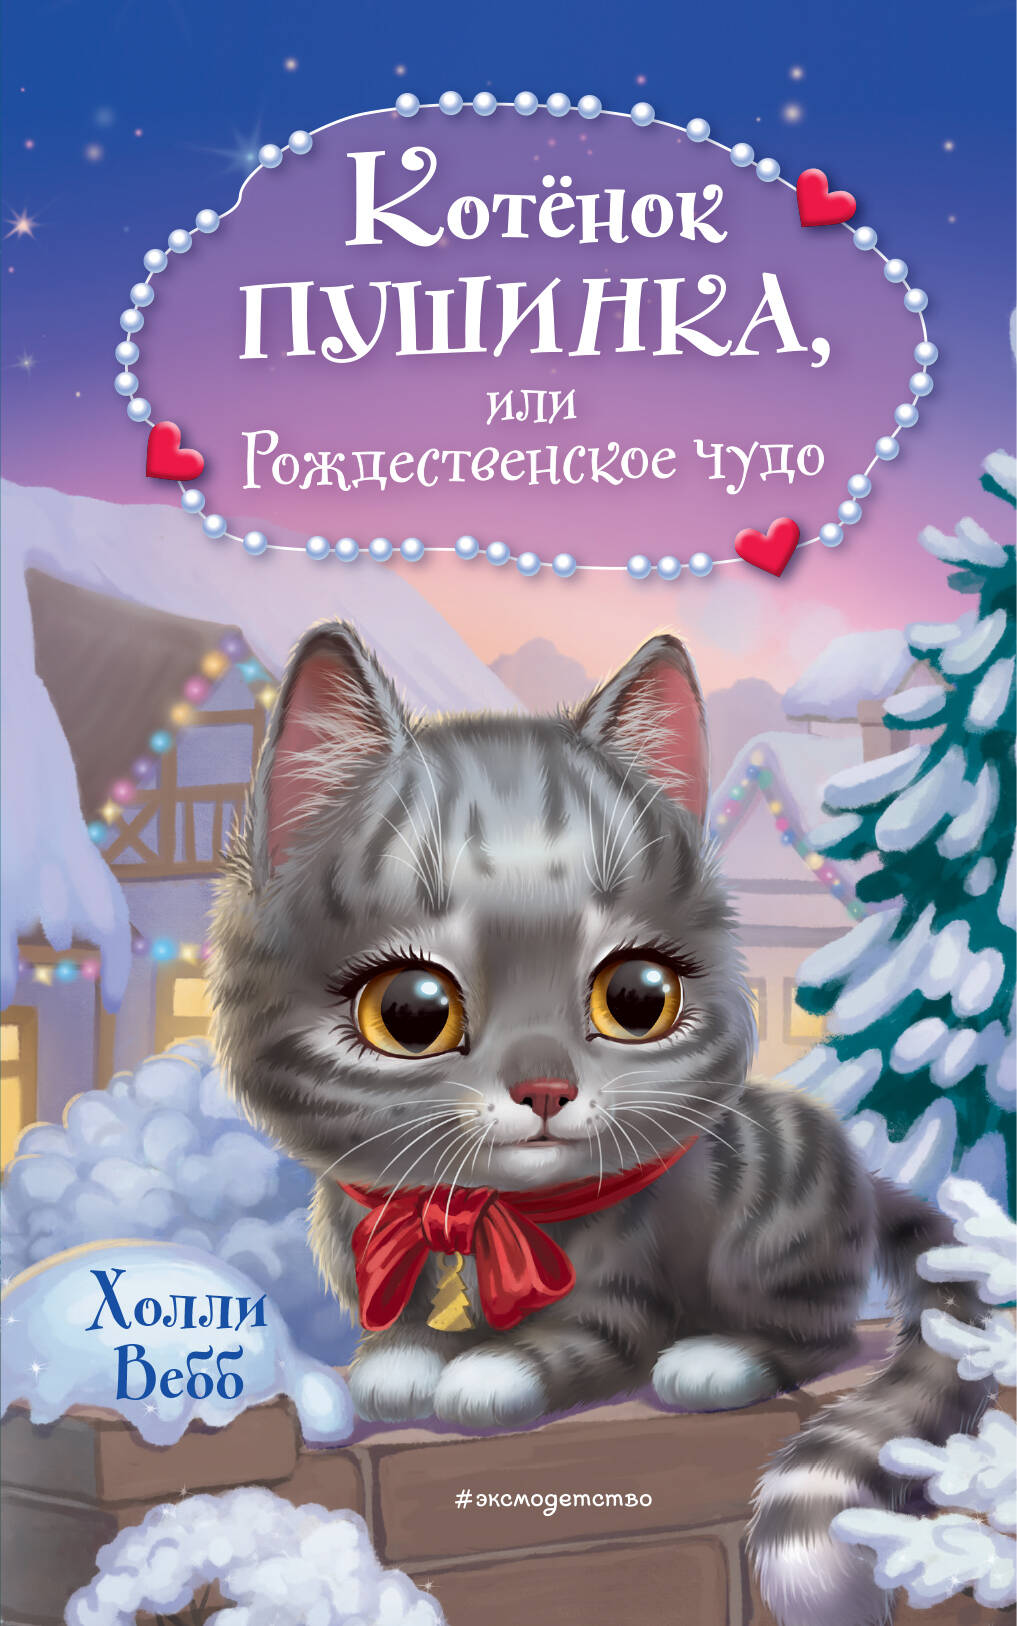 Котёнок Пушинка, или Рождественское чудо вебб холли котёнок пушинка или рождественское чудо